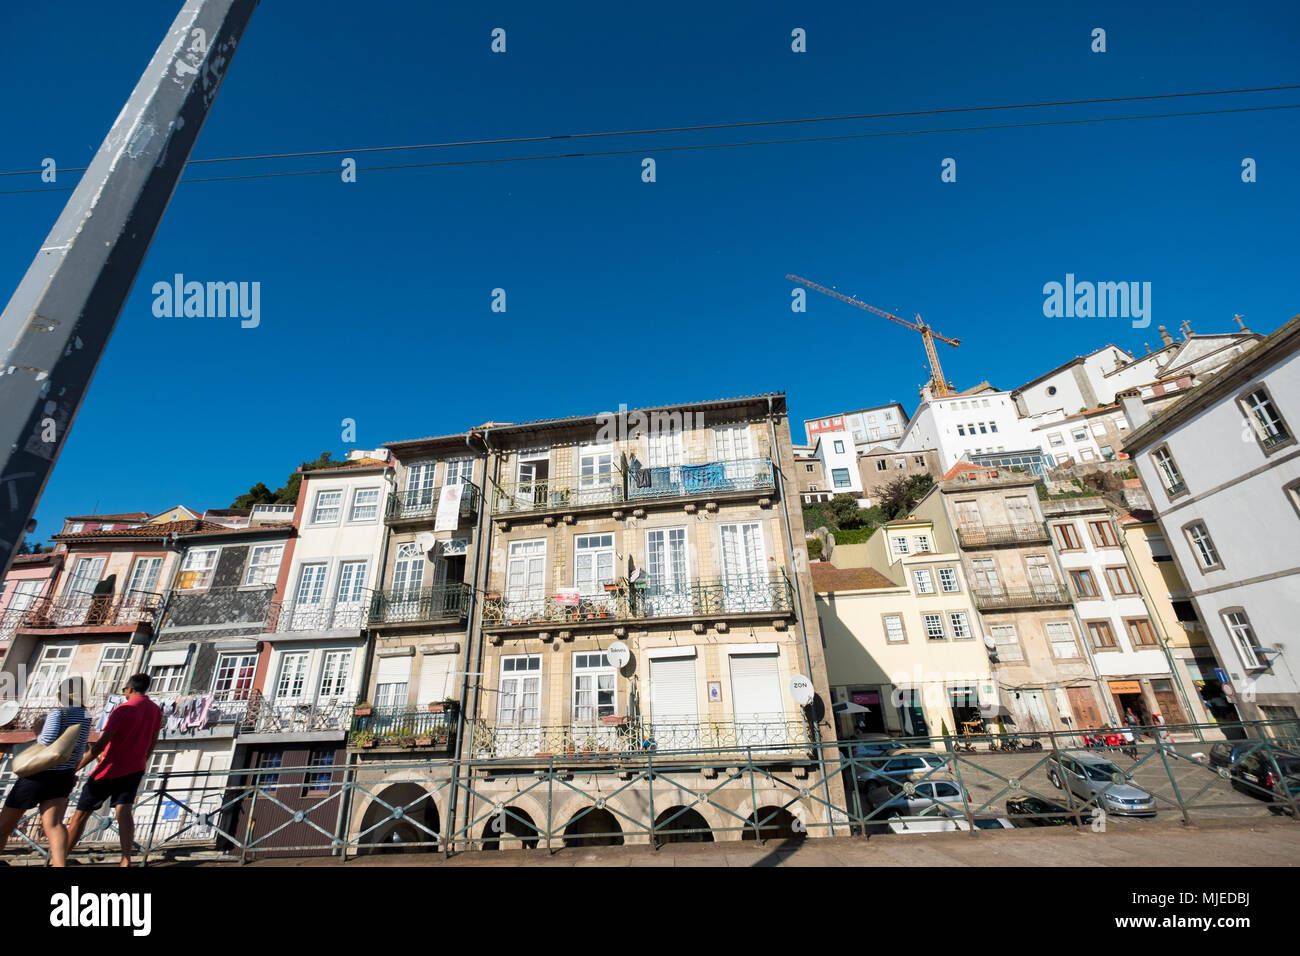 La vie quotidienne dans une rue centrale de la ville de Porto Banque D'Images